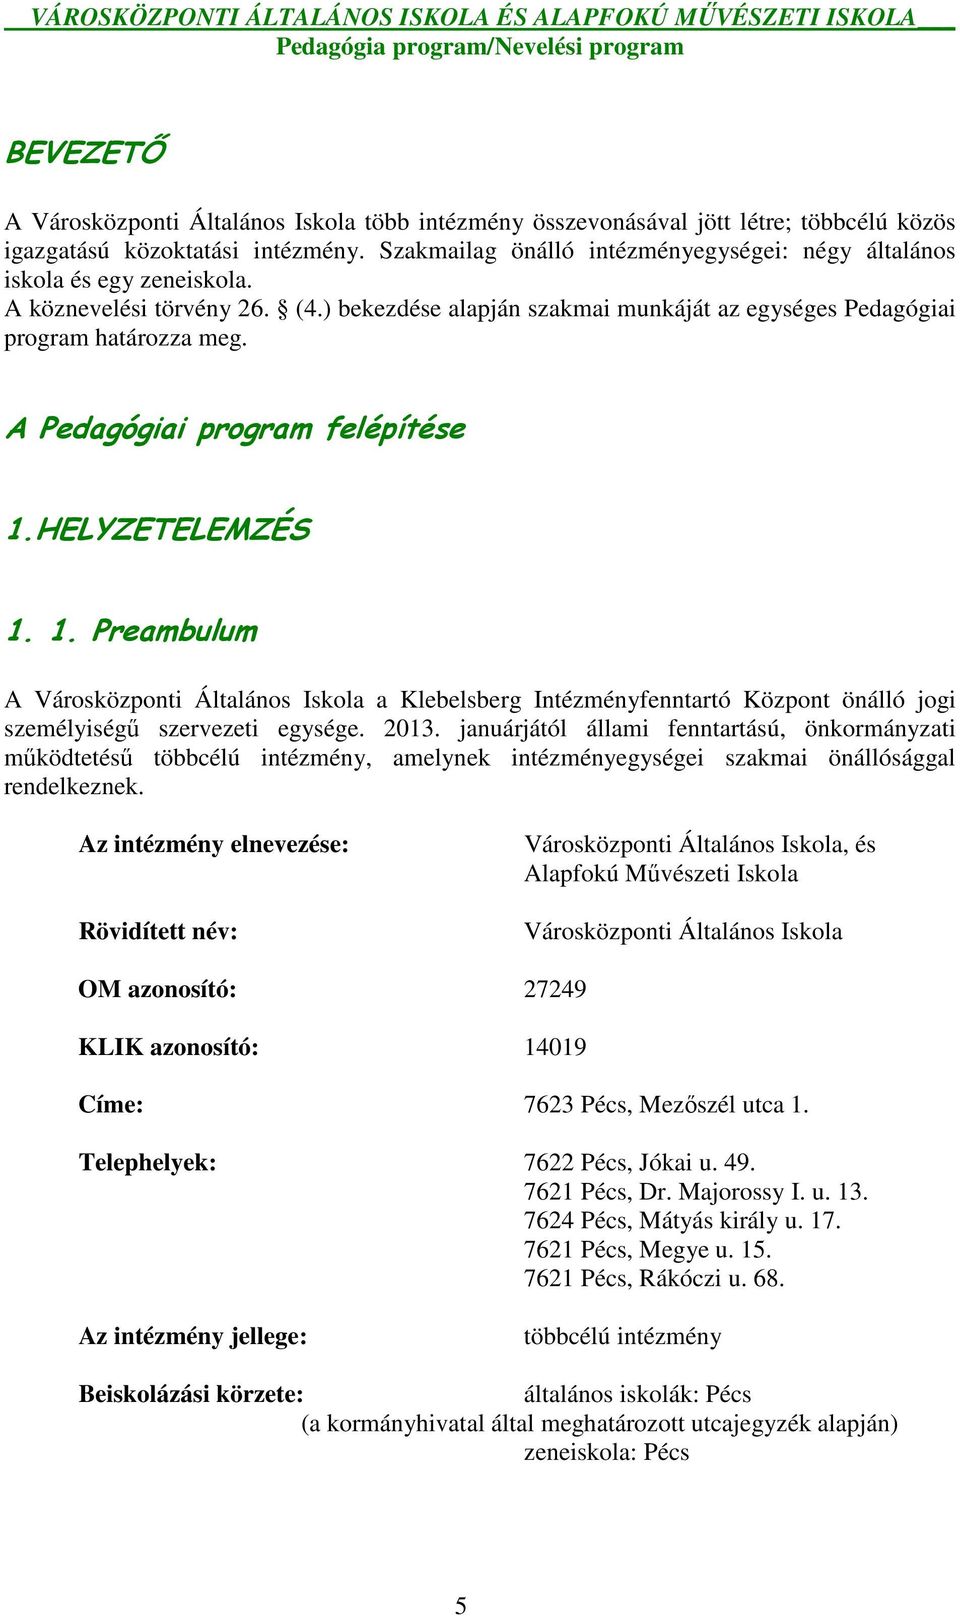 A Pedagógiai program felépítése 1.HELYZETELEMZÉS 1. 1. Preambulum A Városközponti Általános Iskola a Klebelsberg Intézményfenntartó Központ önálló jogi személyiségő szervezeti egysége. 2013.